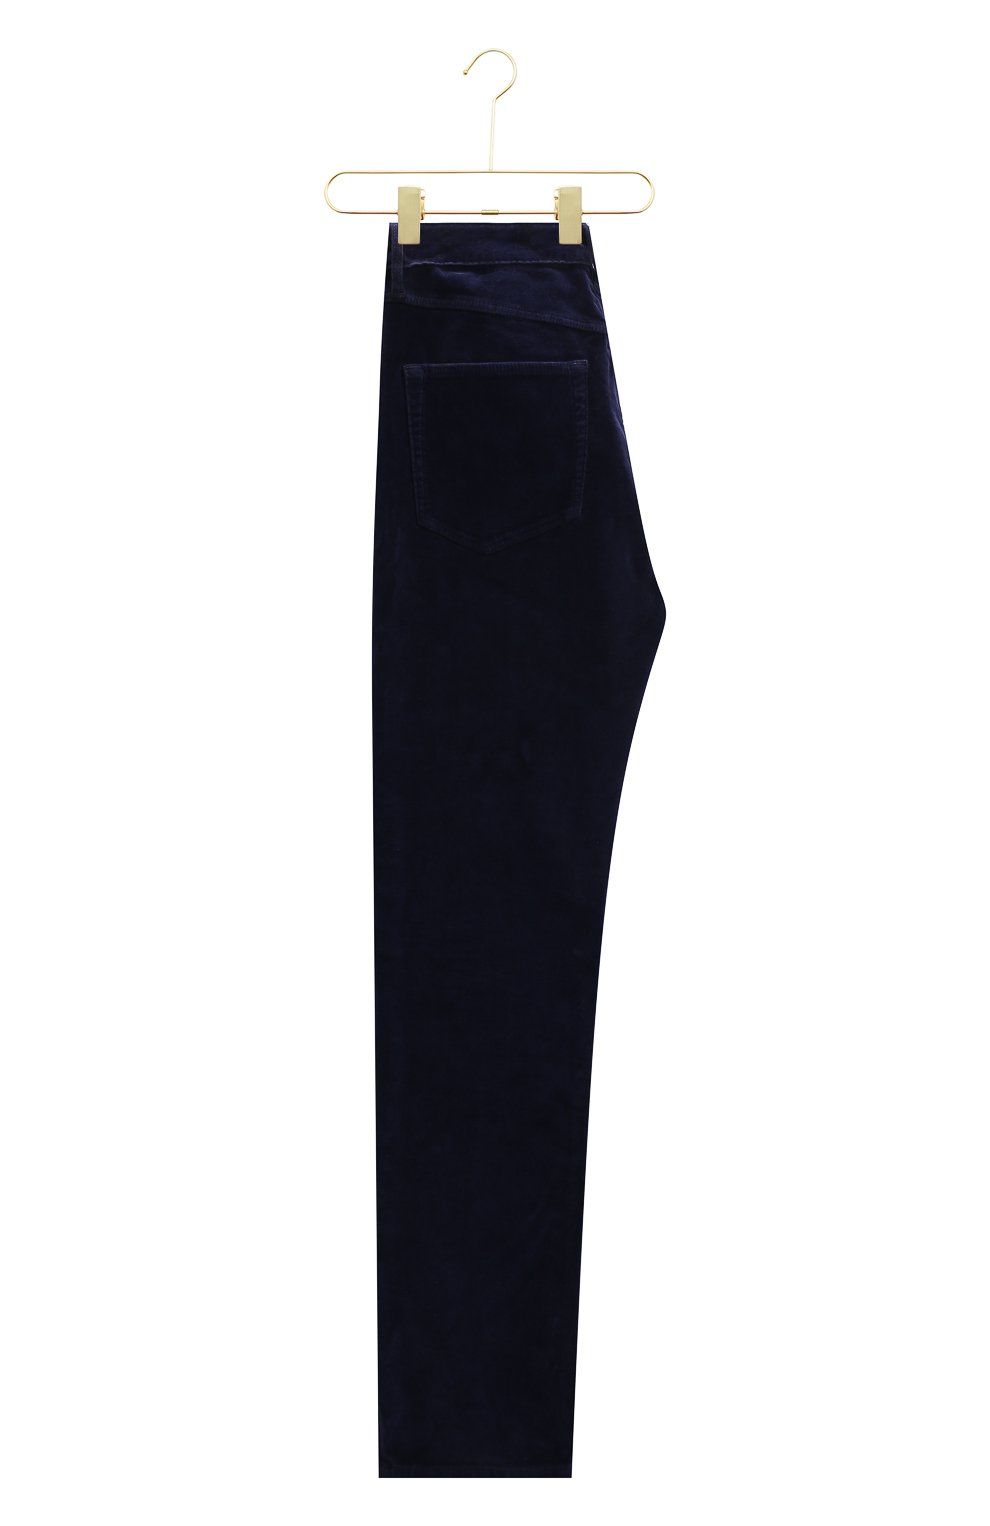 Хлопковые брюки | 3x1 | Синий - 2